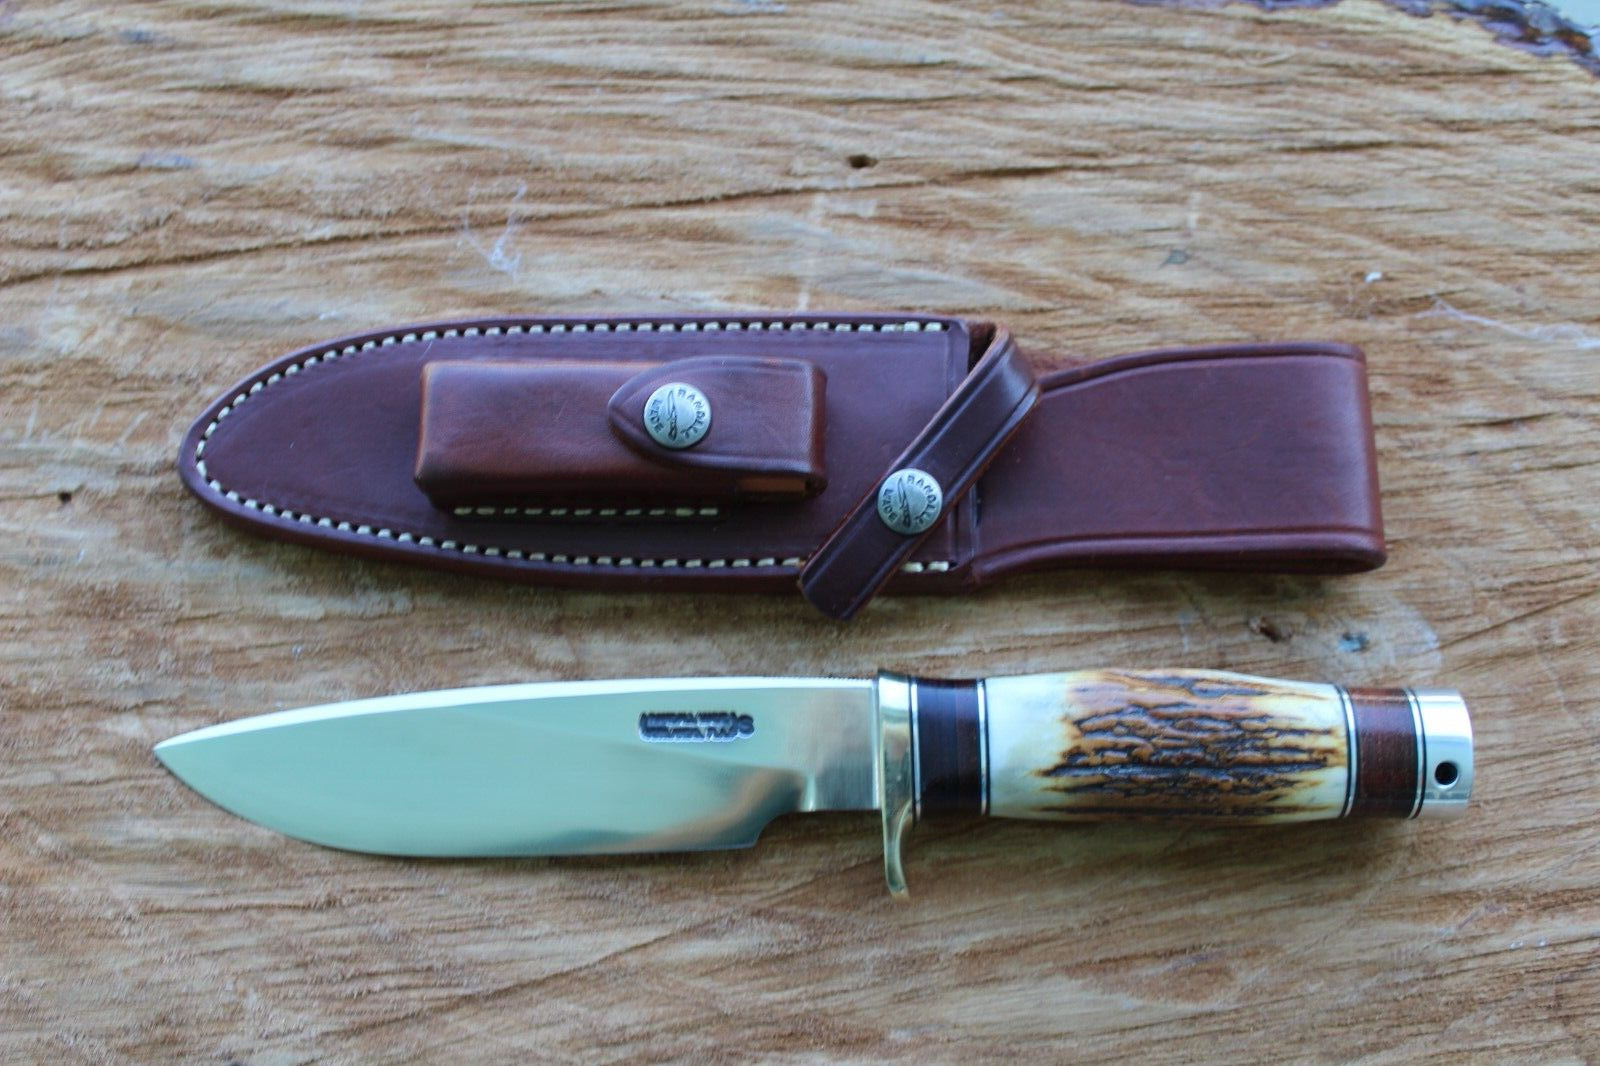 randall knife model 25-6